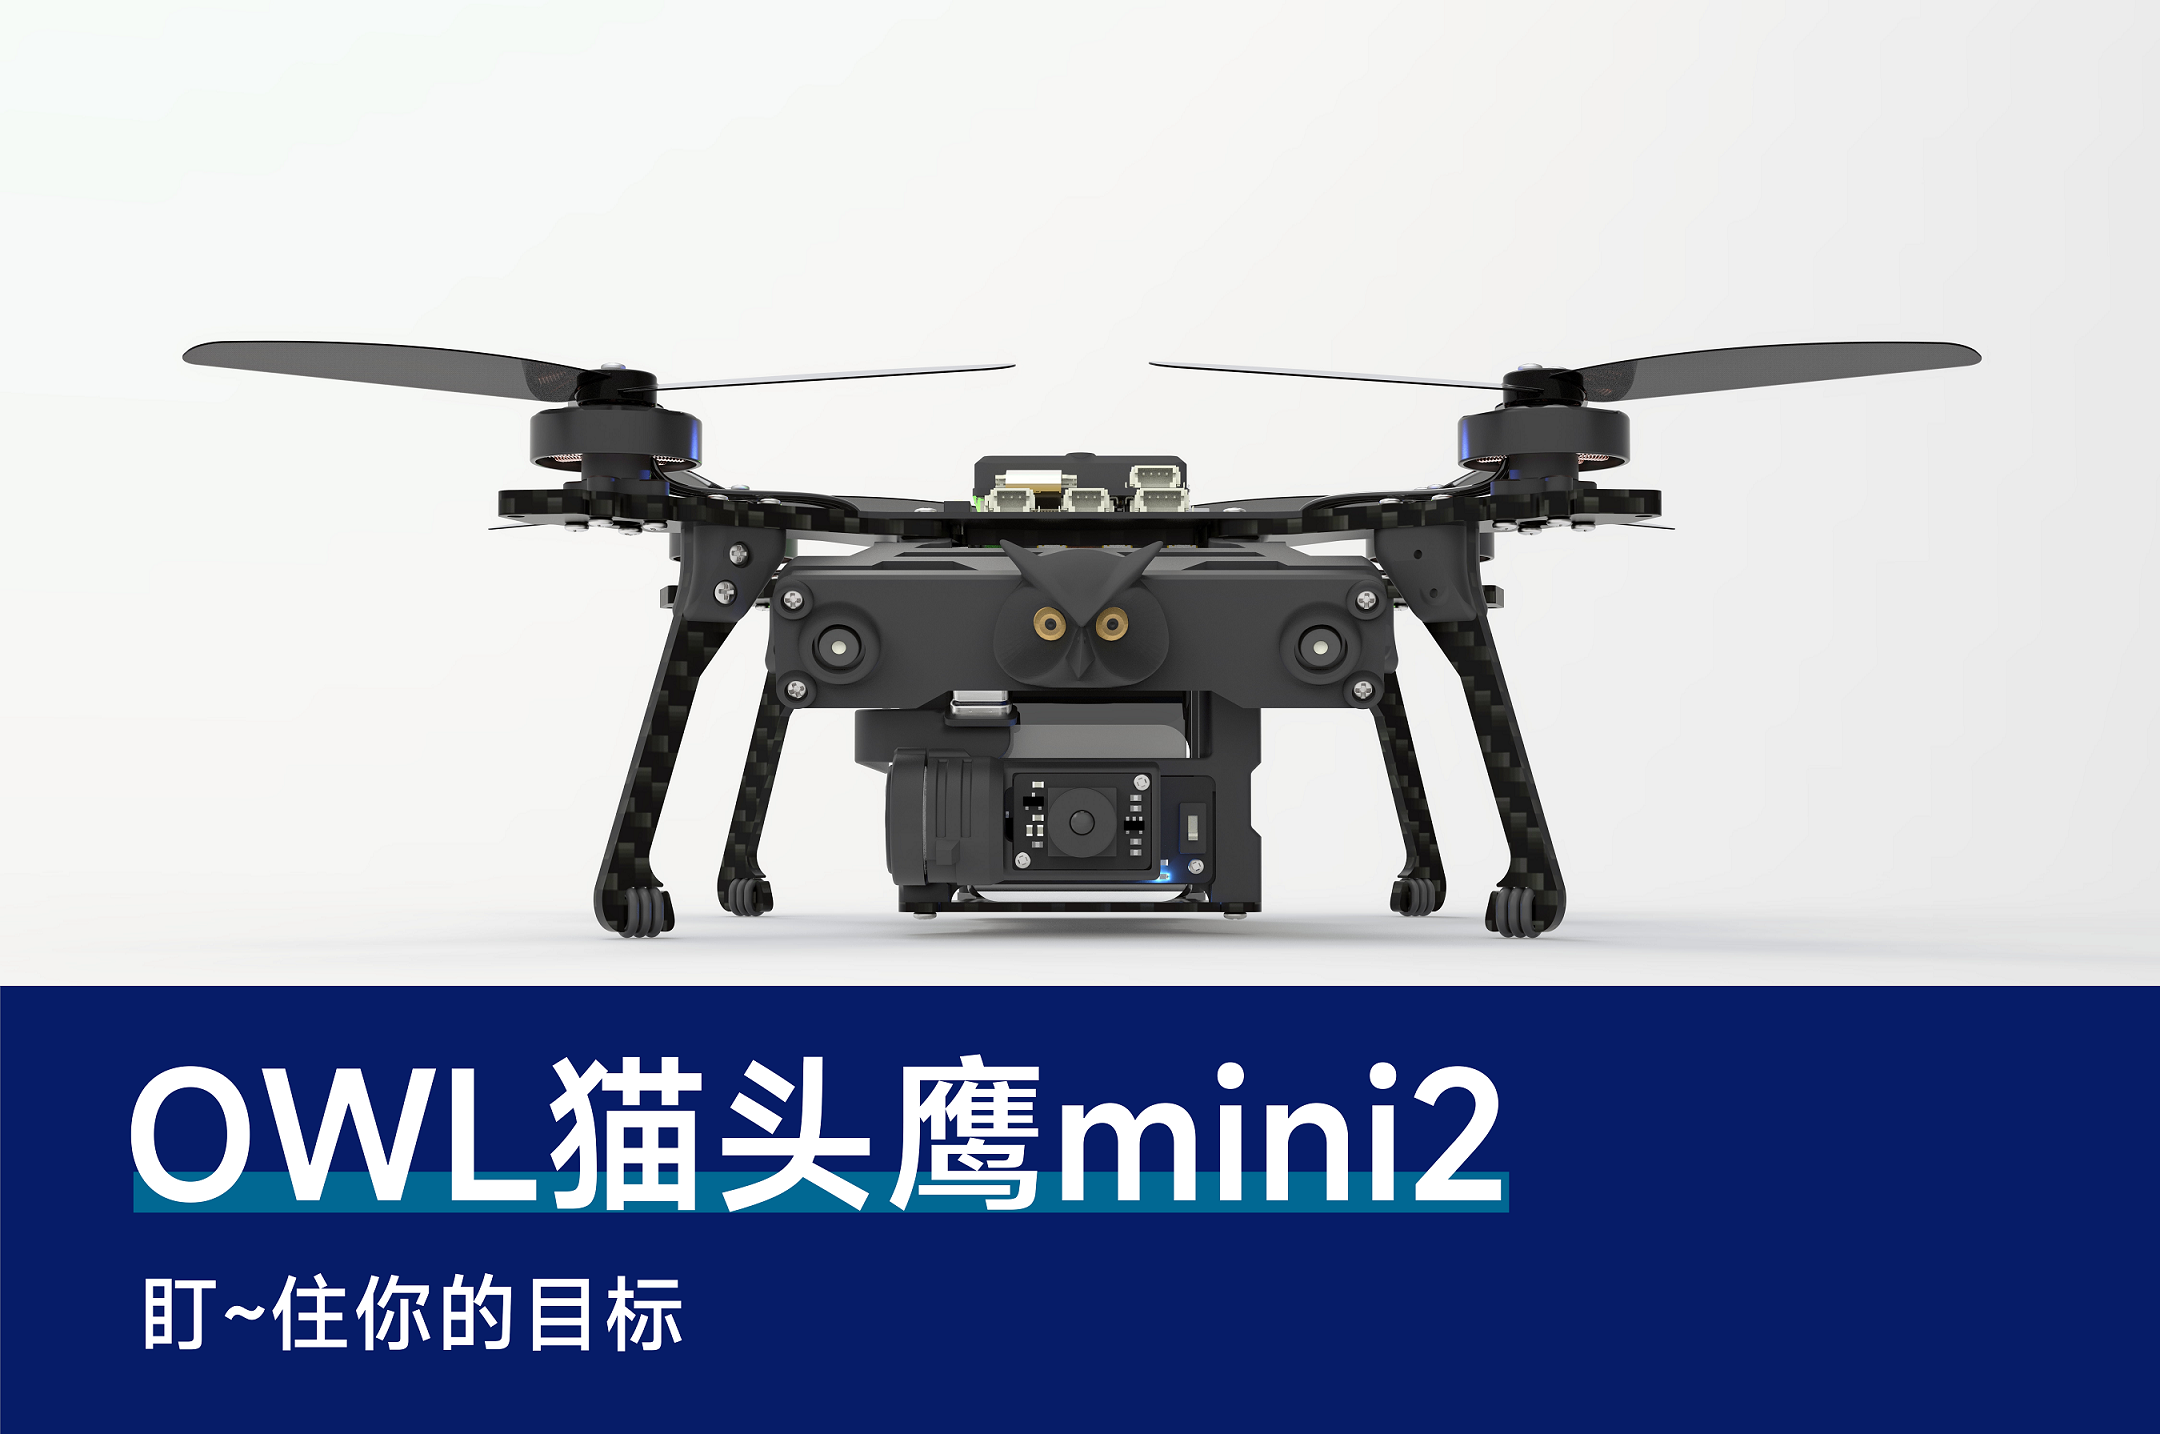 猫头鹰mini2无人机蜂群开发平台